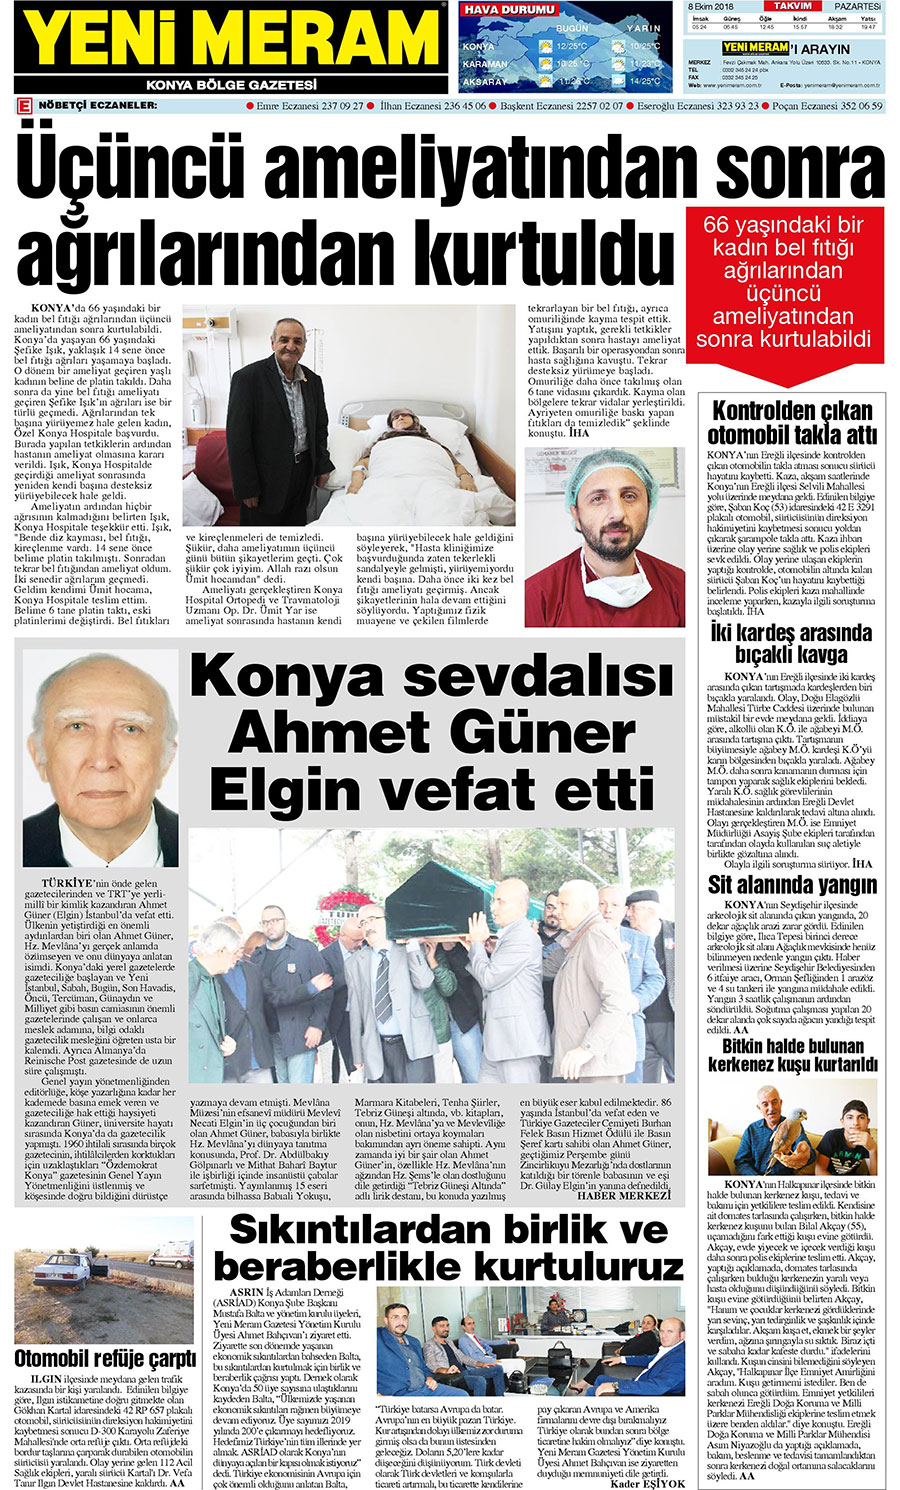 8 Ekim 2018 Yeni Meram Gazetesi